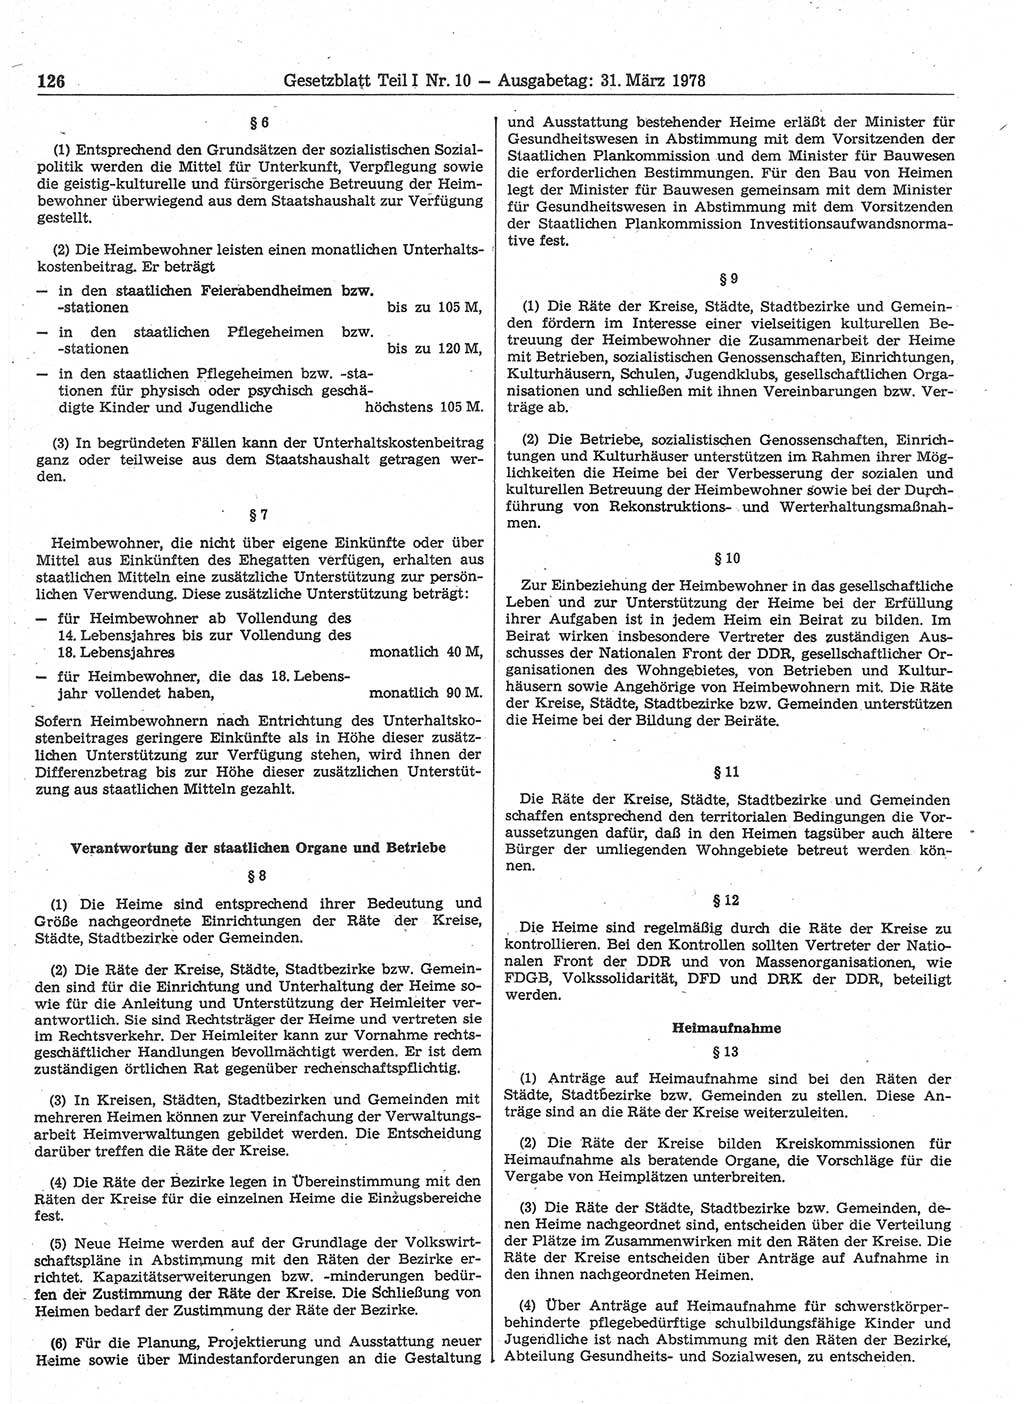 Gesetzblatt (GBl.) der Deutschen Demokratischen Republik (DDR) Teil Ⅰ 1978, Seite 126 (GBl. DDR Ⅰ 1978, S. 126)